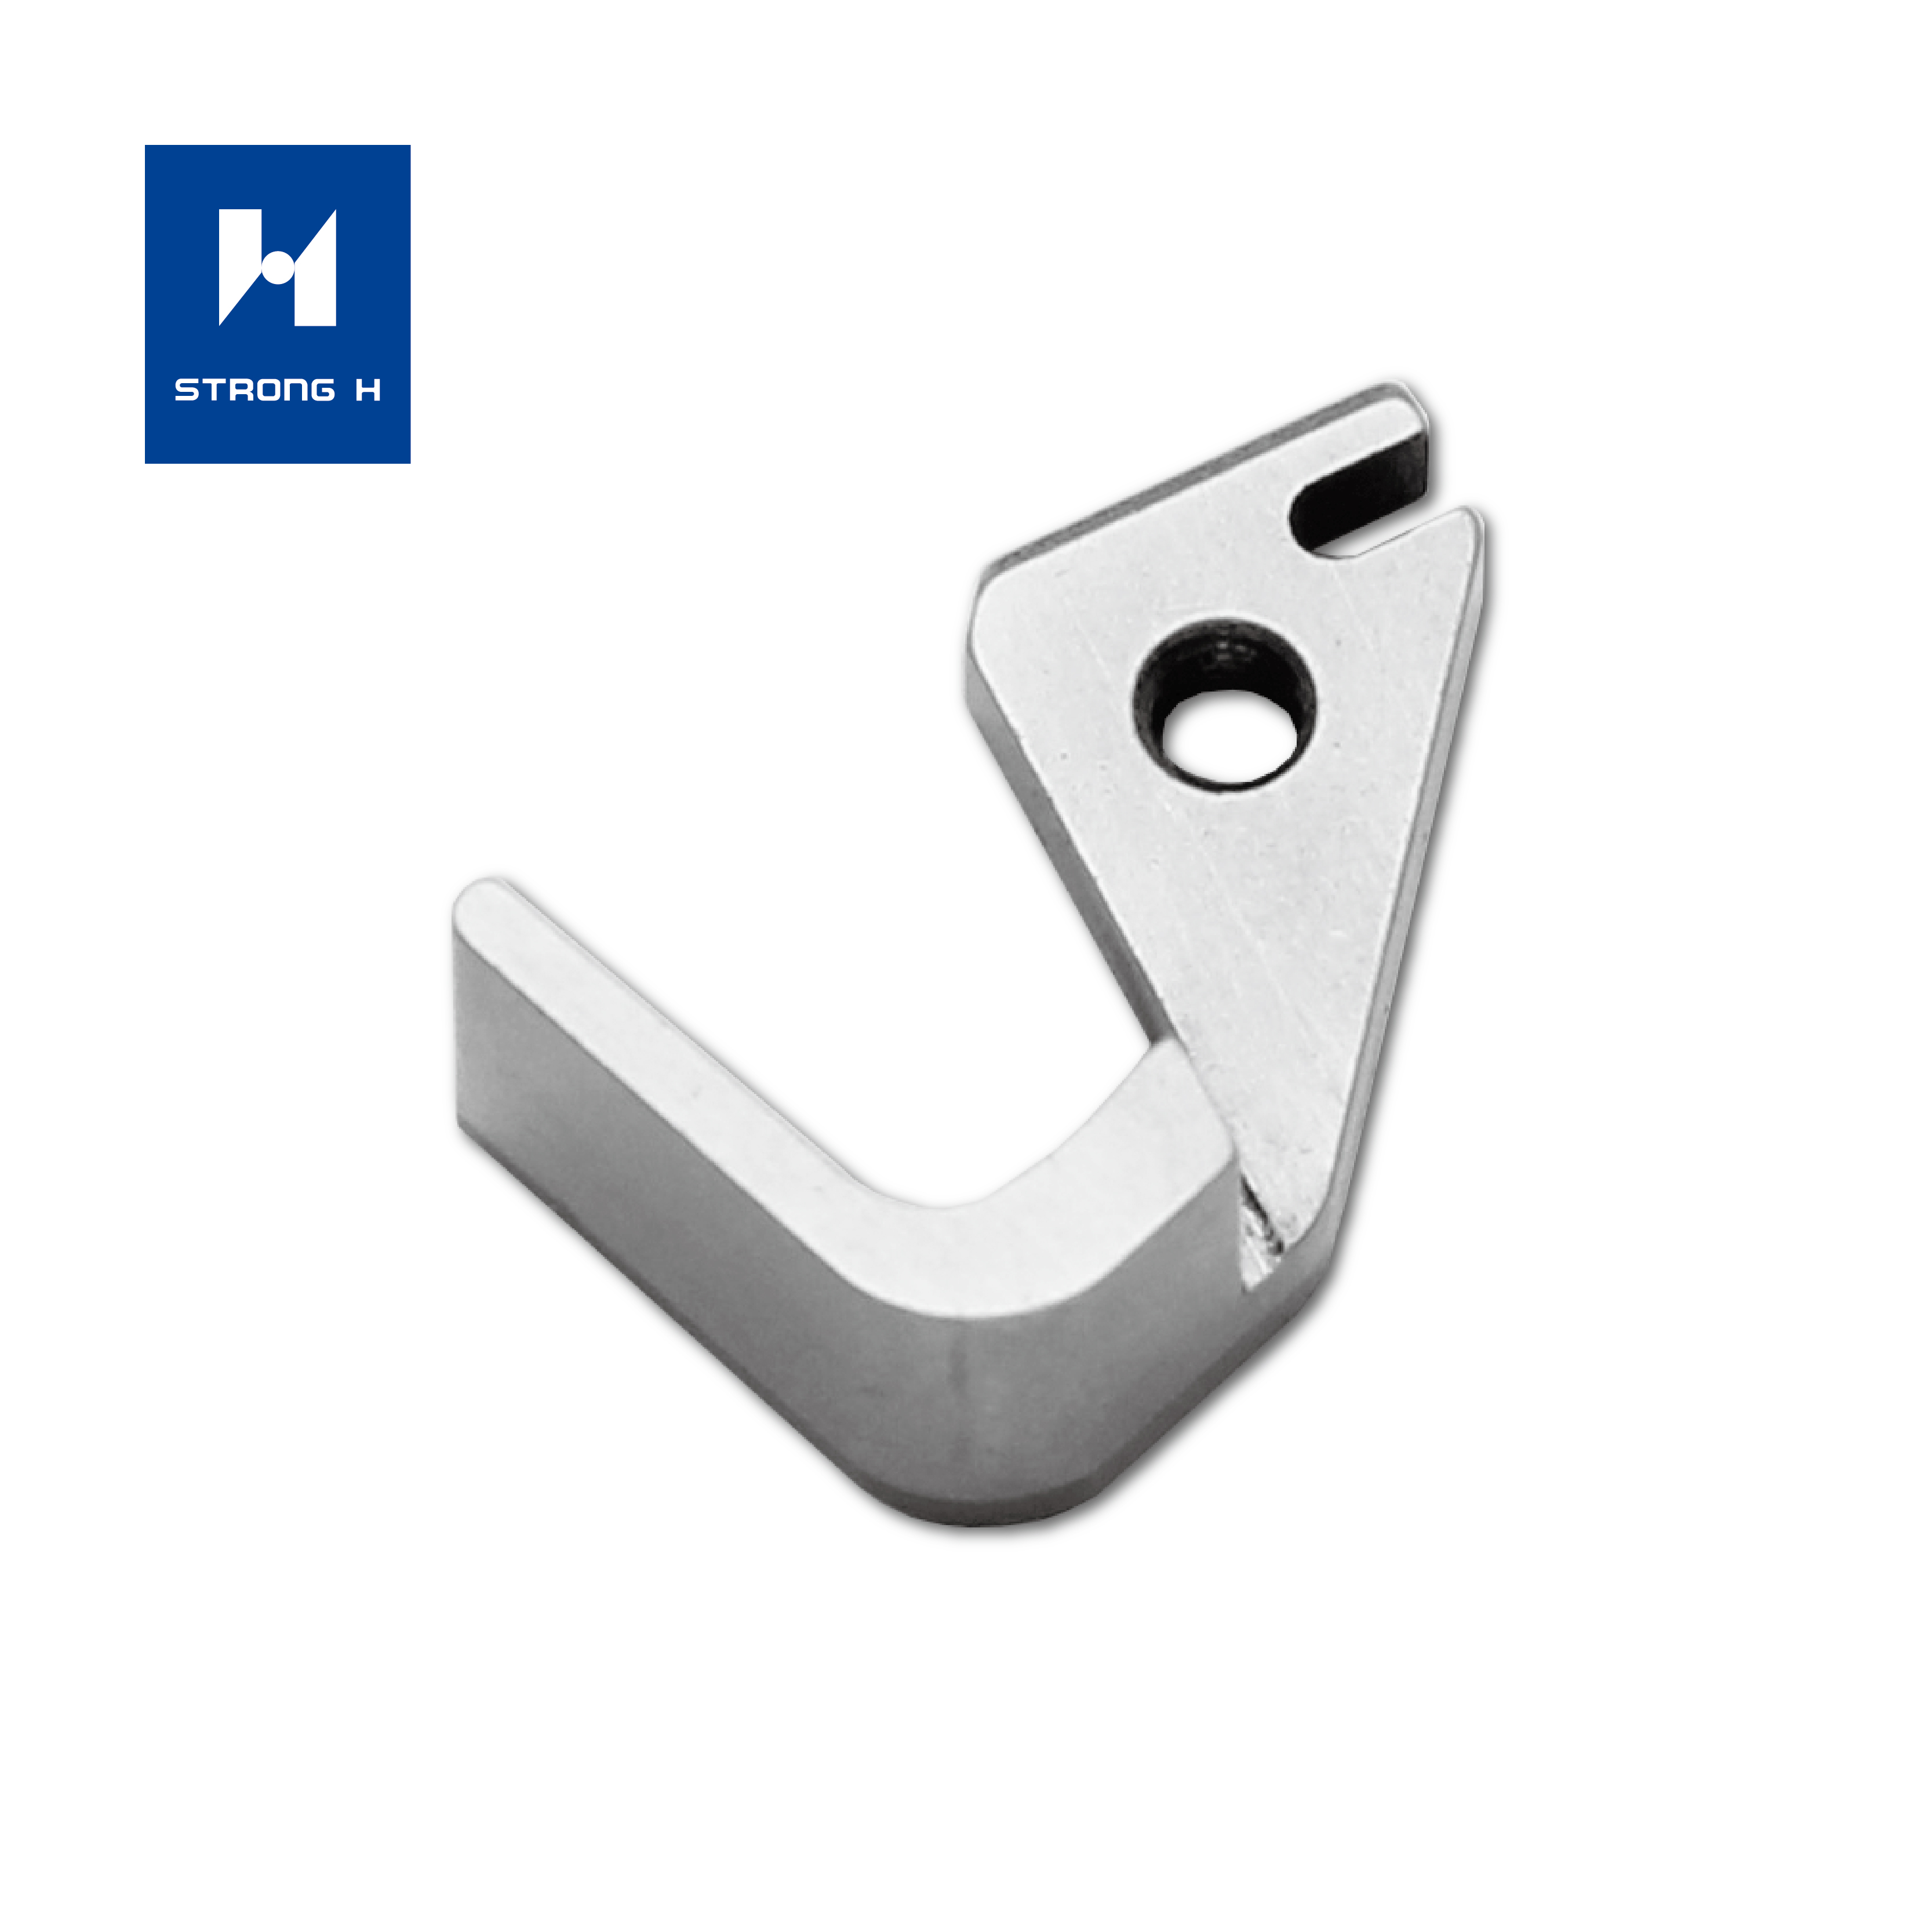 Couteaux de marque Pegasus de marque Siruba de marque Durkopp pour machines à coudre industrielles